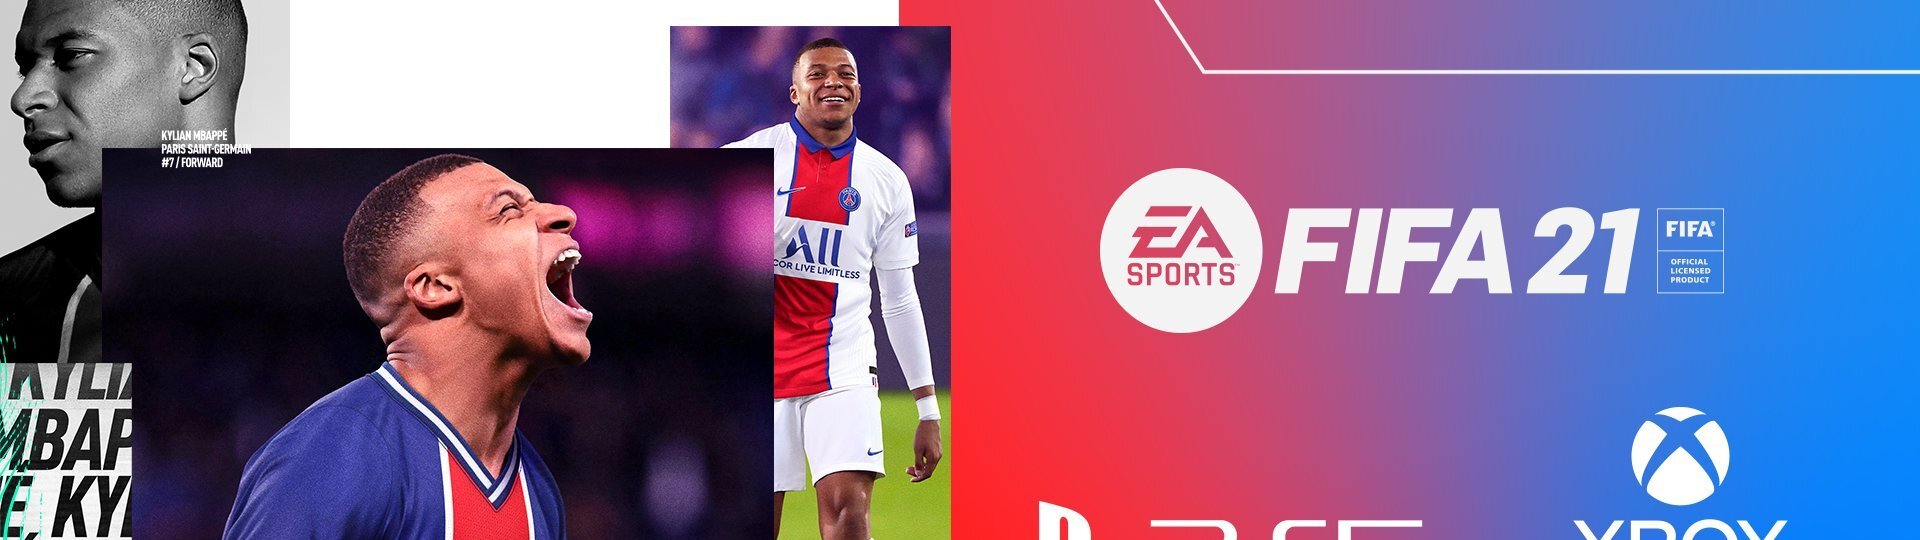 Next-gen verze FIFA 21 dorazí na PS5 v prosinci | Novinky